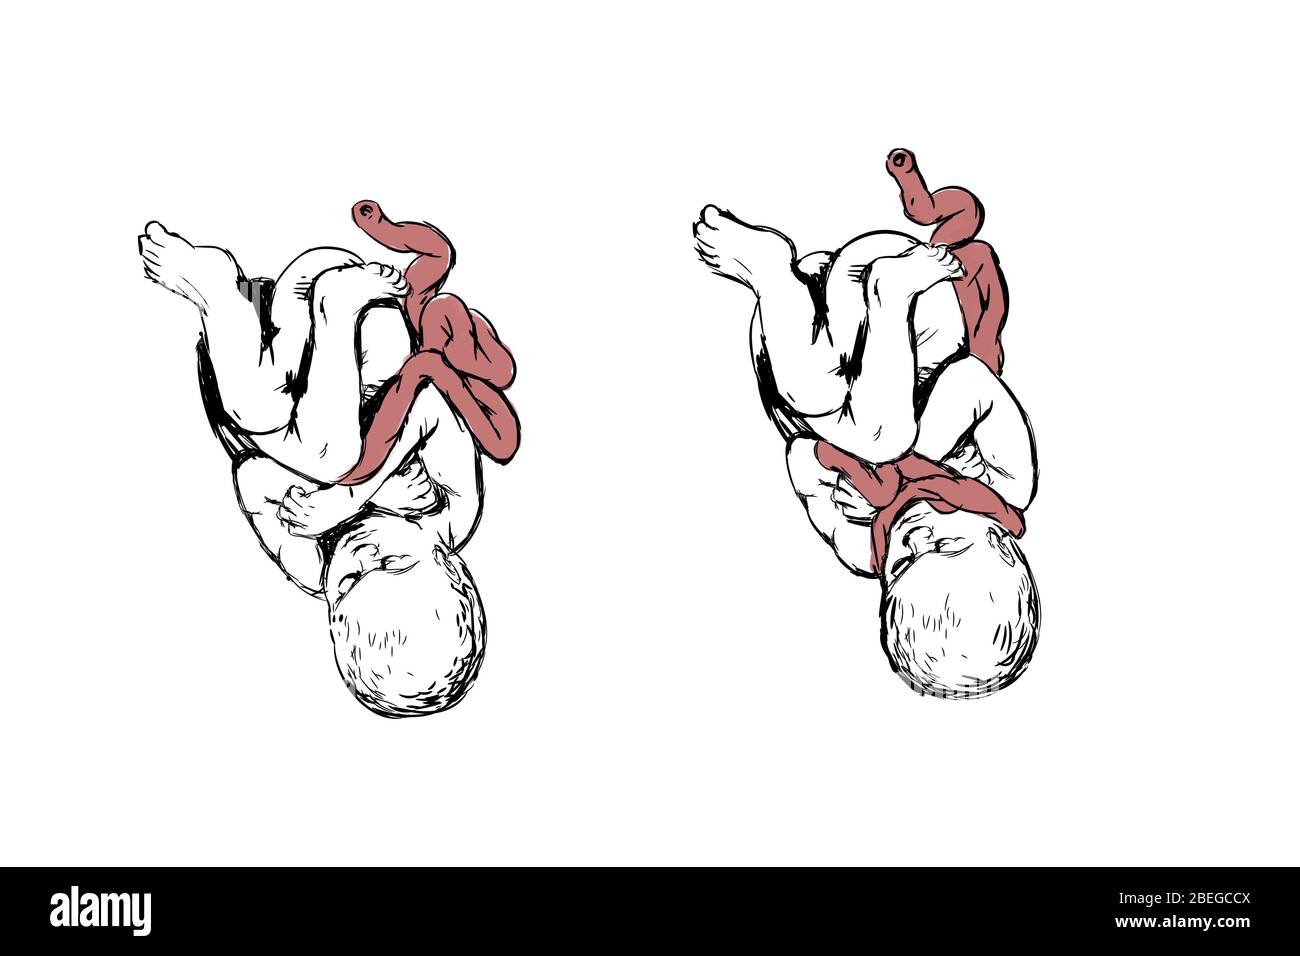 Illustrazione che mostra un bambino con il cavo nuchal (il cavo ombelicale avvolto intorno al collo), una condizione che può potenzialmente causare complicazioni alla nascita, come asfissia. Foto Stock